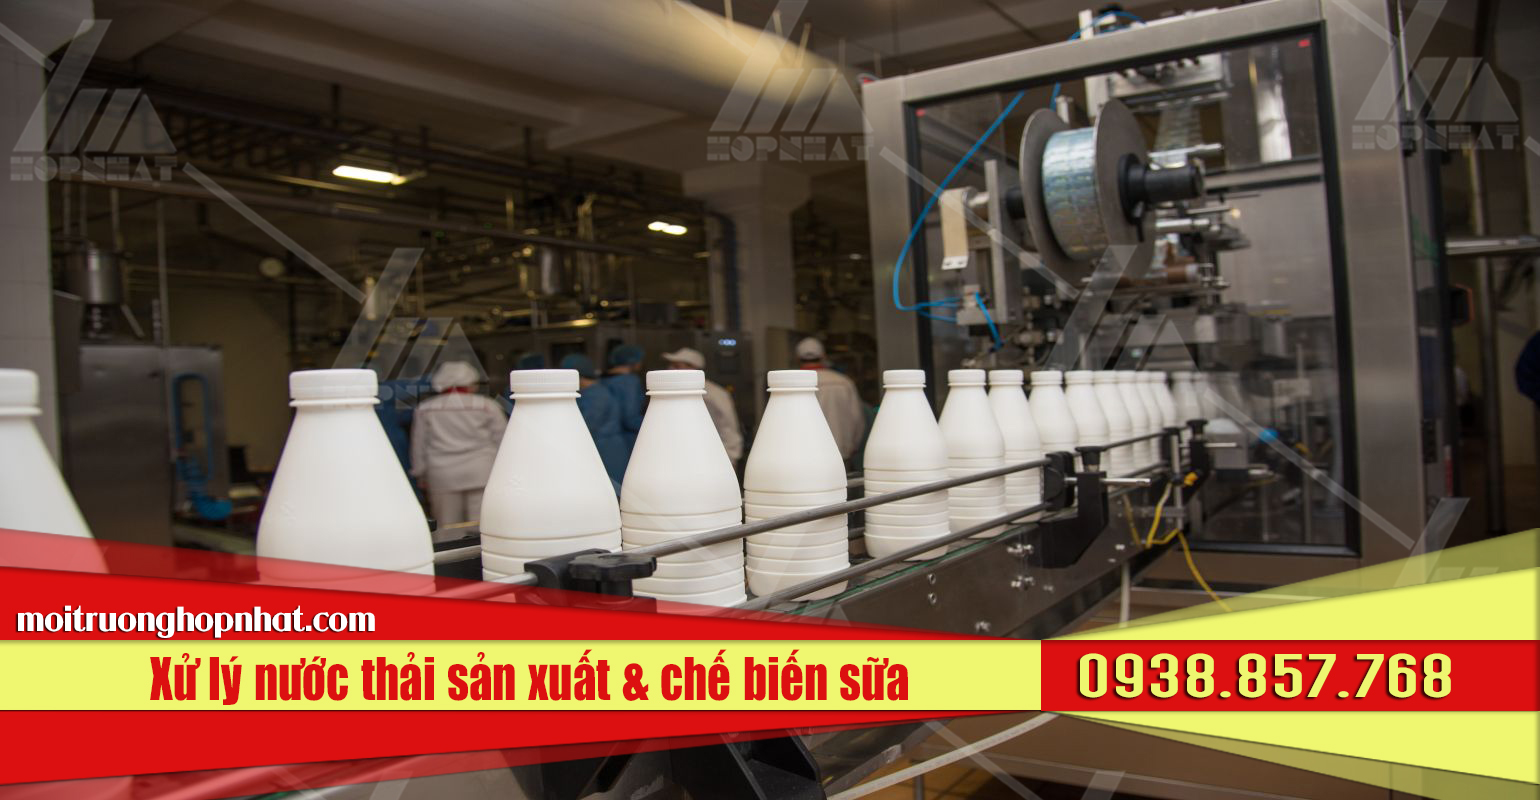 Xử lý nước thải sản xuất và chế biến sữa